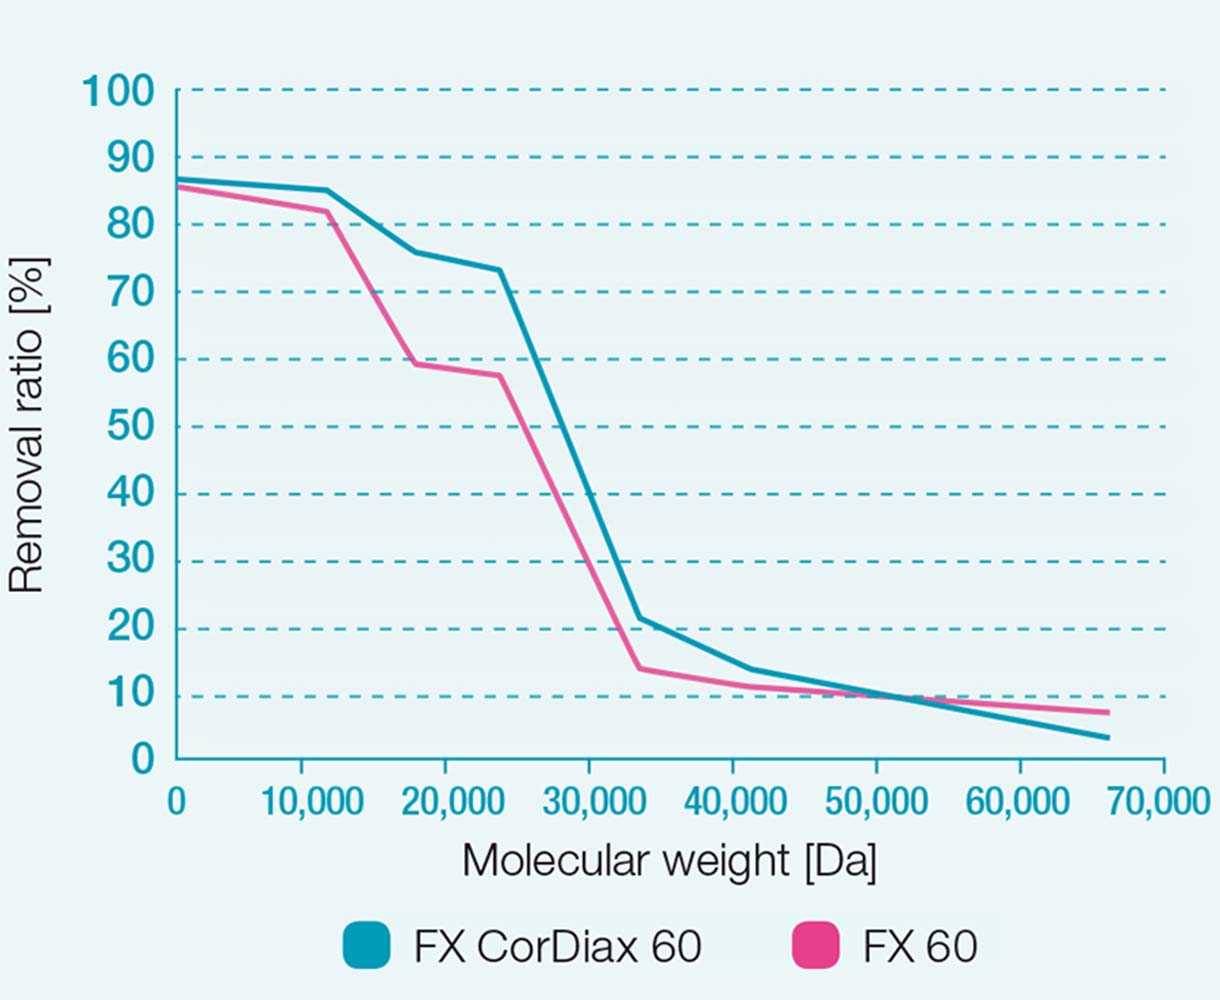 Porovnání účinnosti FX 60 a FX CorDiax 60